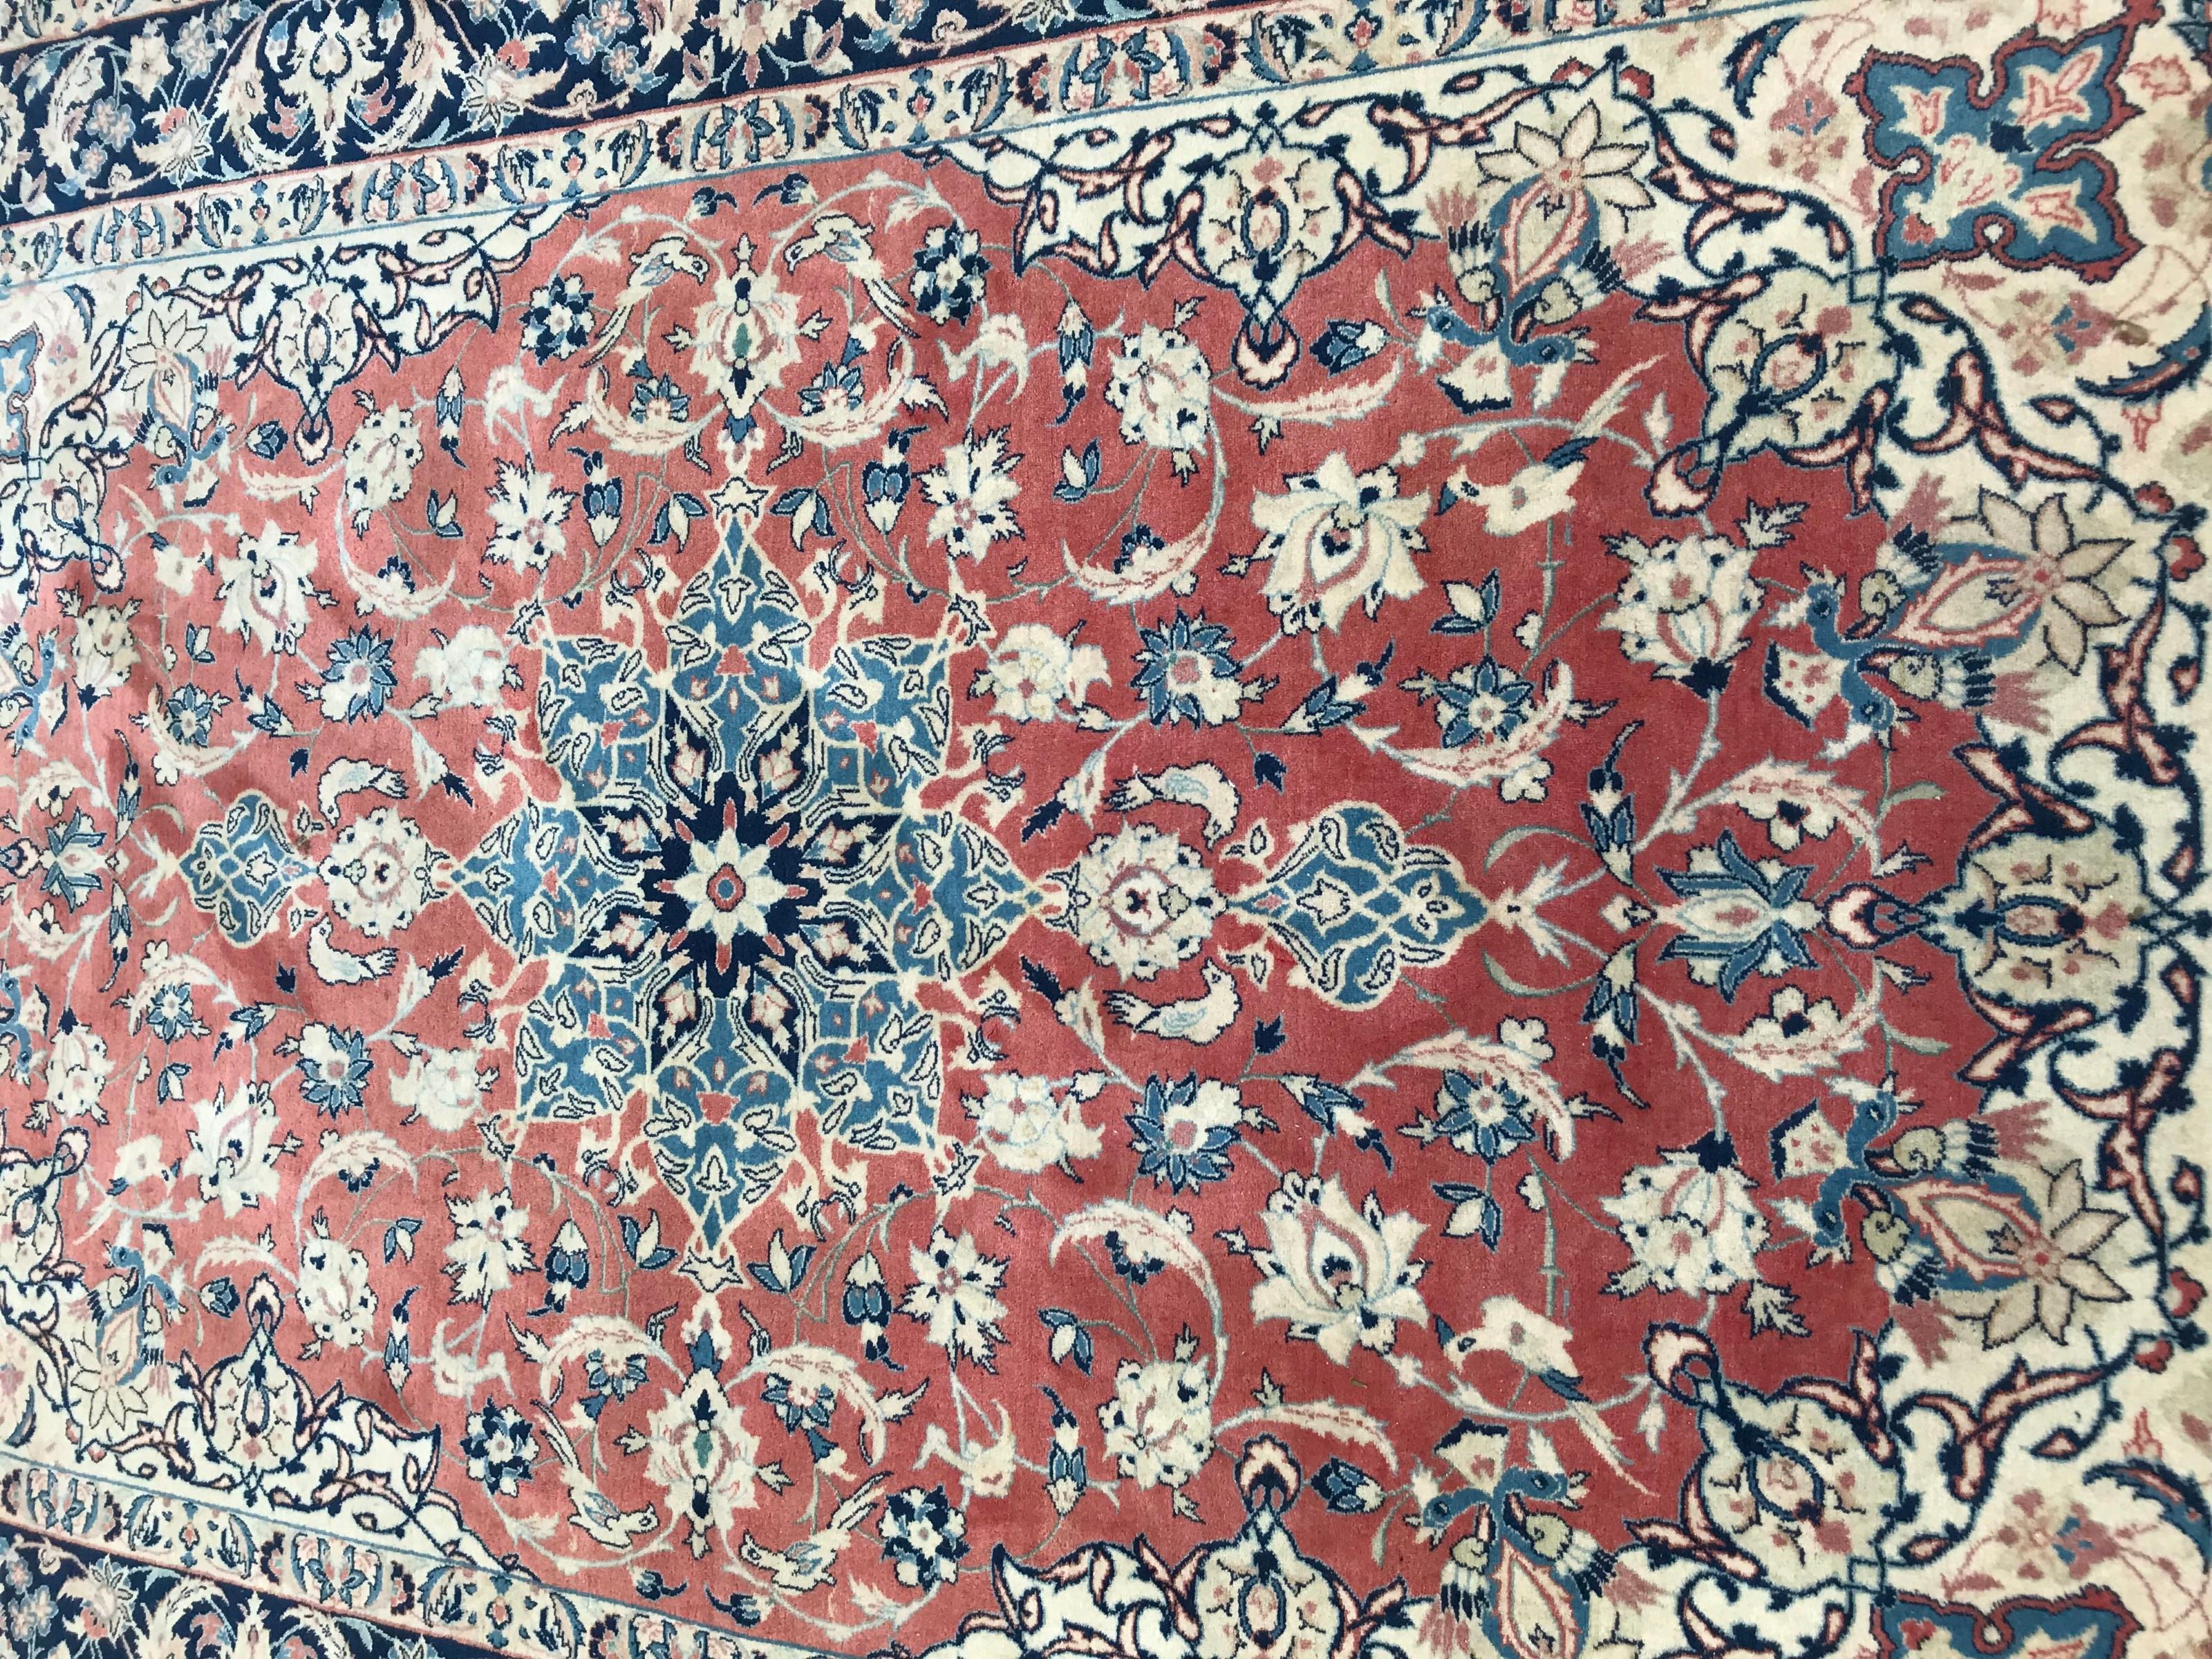 Sehr feiner Teppich mit schönem floralem und zentralem Medaillon-Muster, schöne Farben mit Orange, Blau und Grün, komplett und fein handgeknüpft mit Wollsamt auf Seidenfond.

✨✨✨
